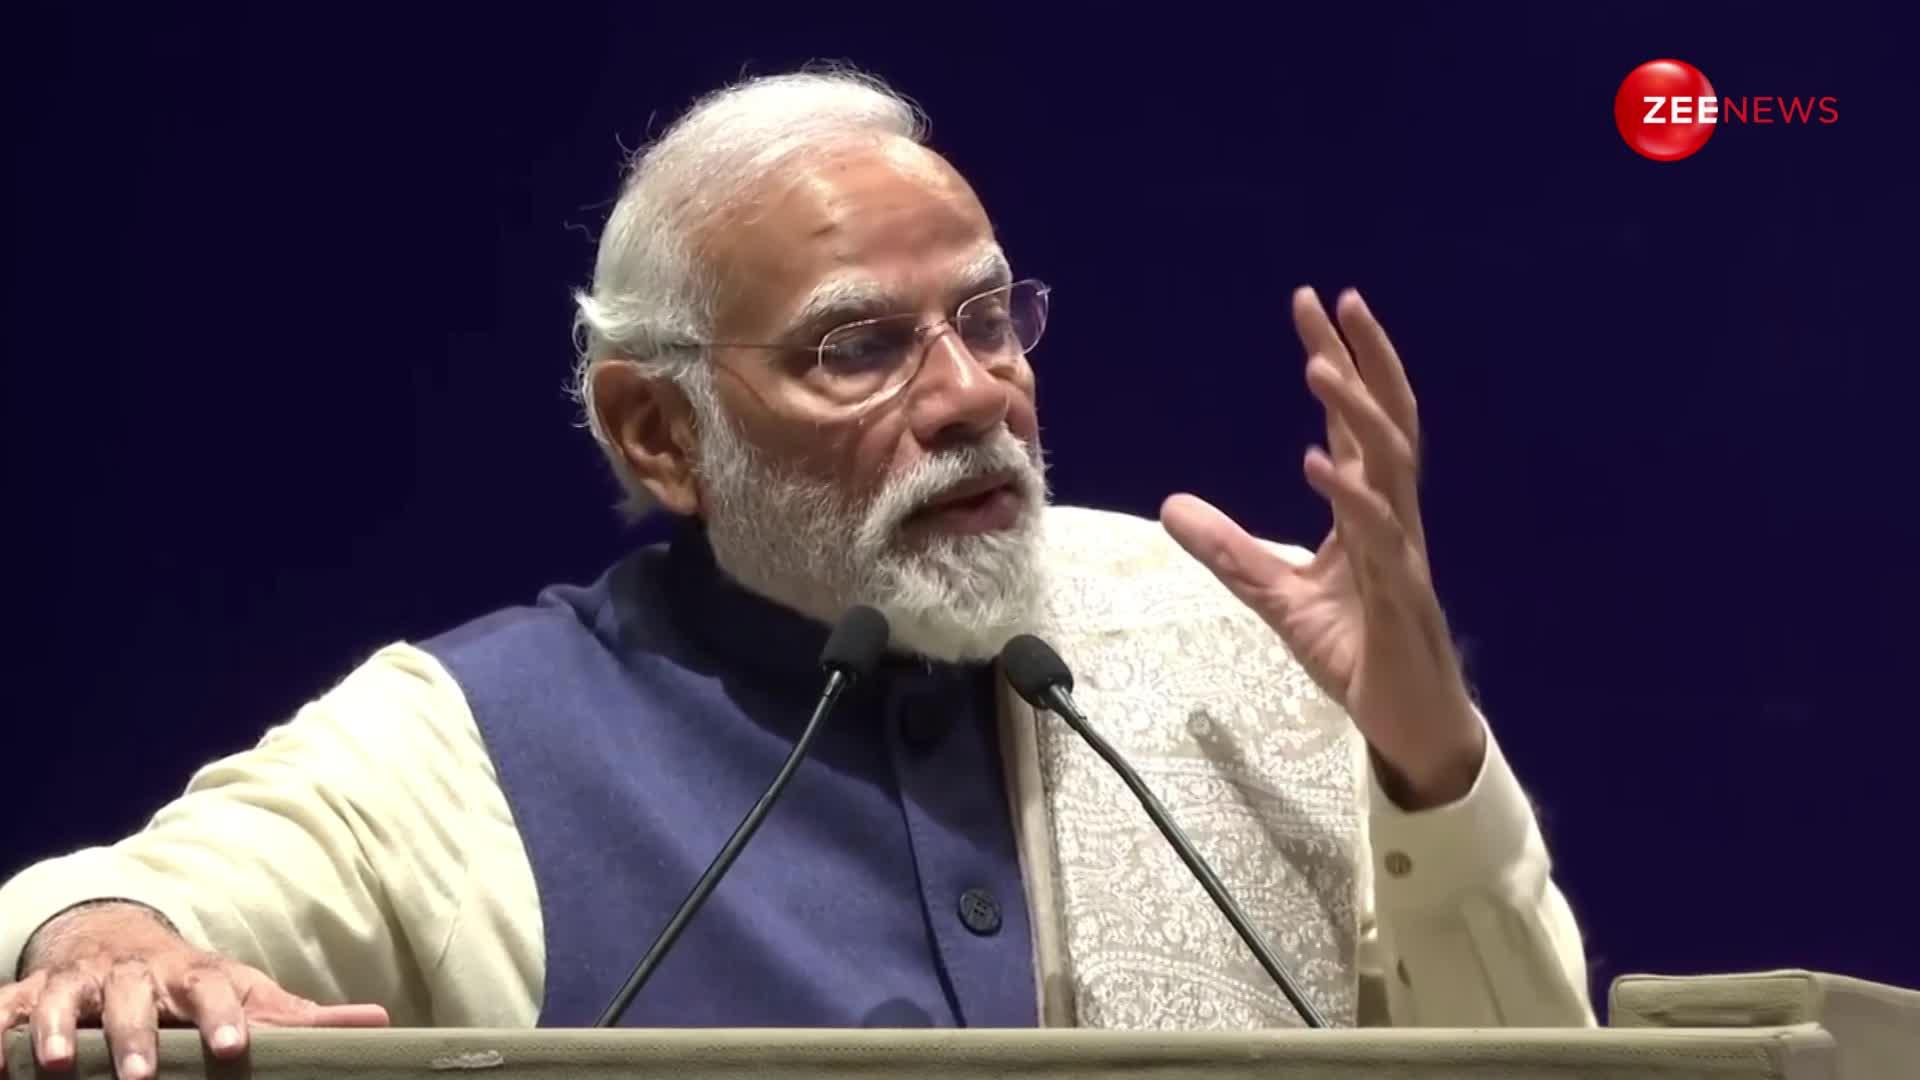 DGP Conference के दौरान PM Modi ने इंडियन नेवी की खूब की सराहना, बोले- भारत दुनिया में प्रमुख शक्ति है...